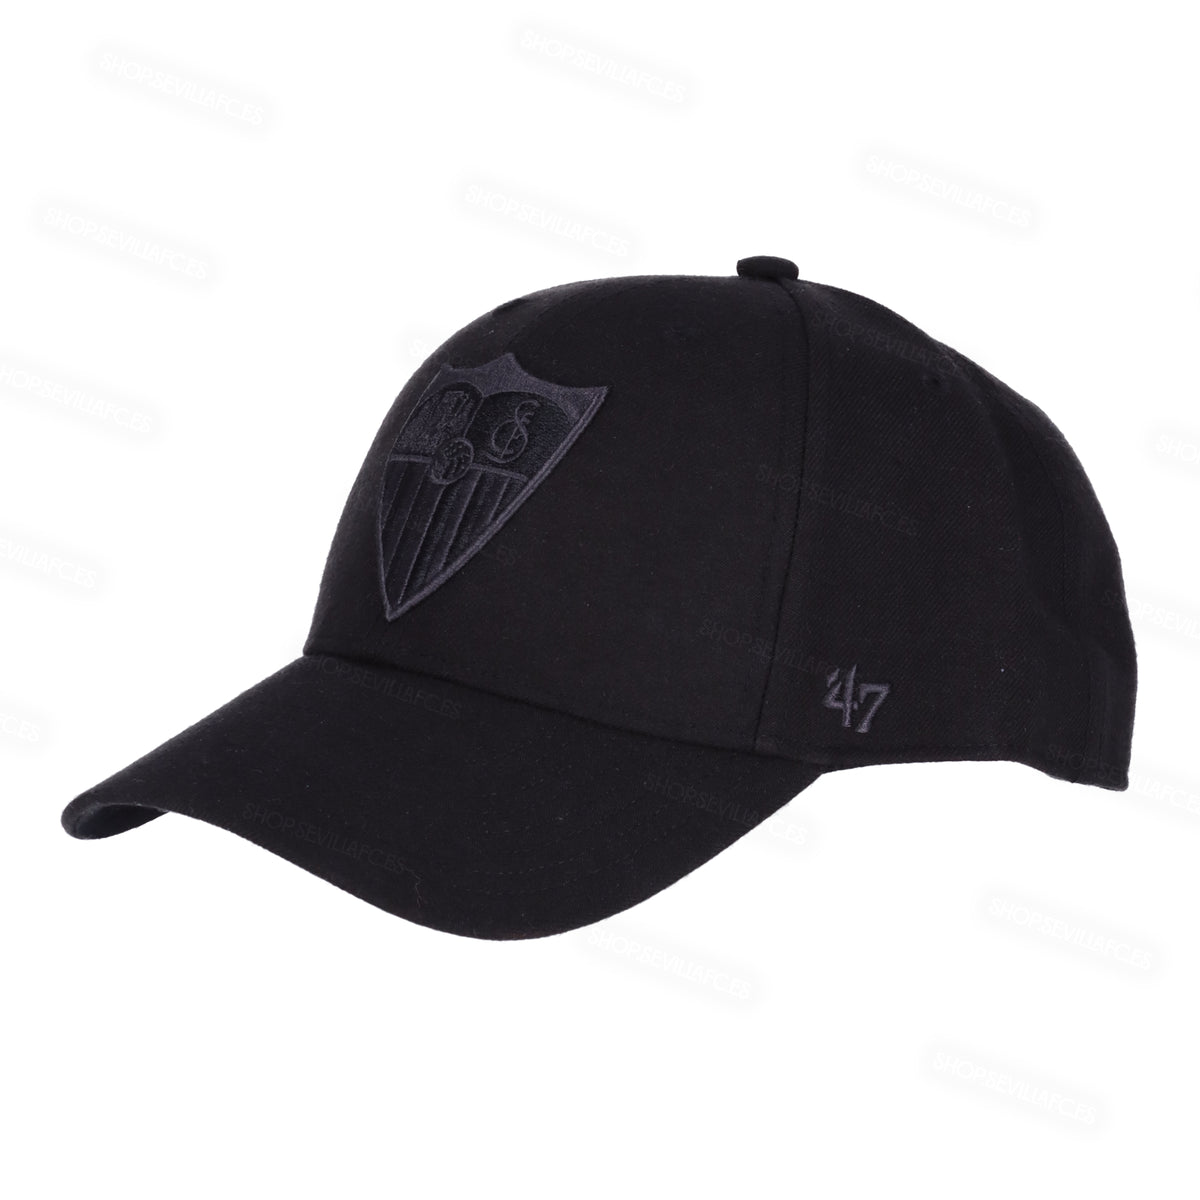 Gorra con escudo negro bordado